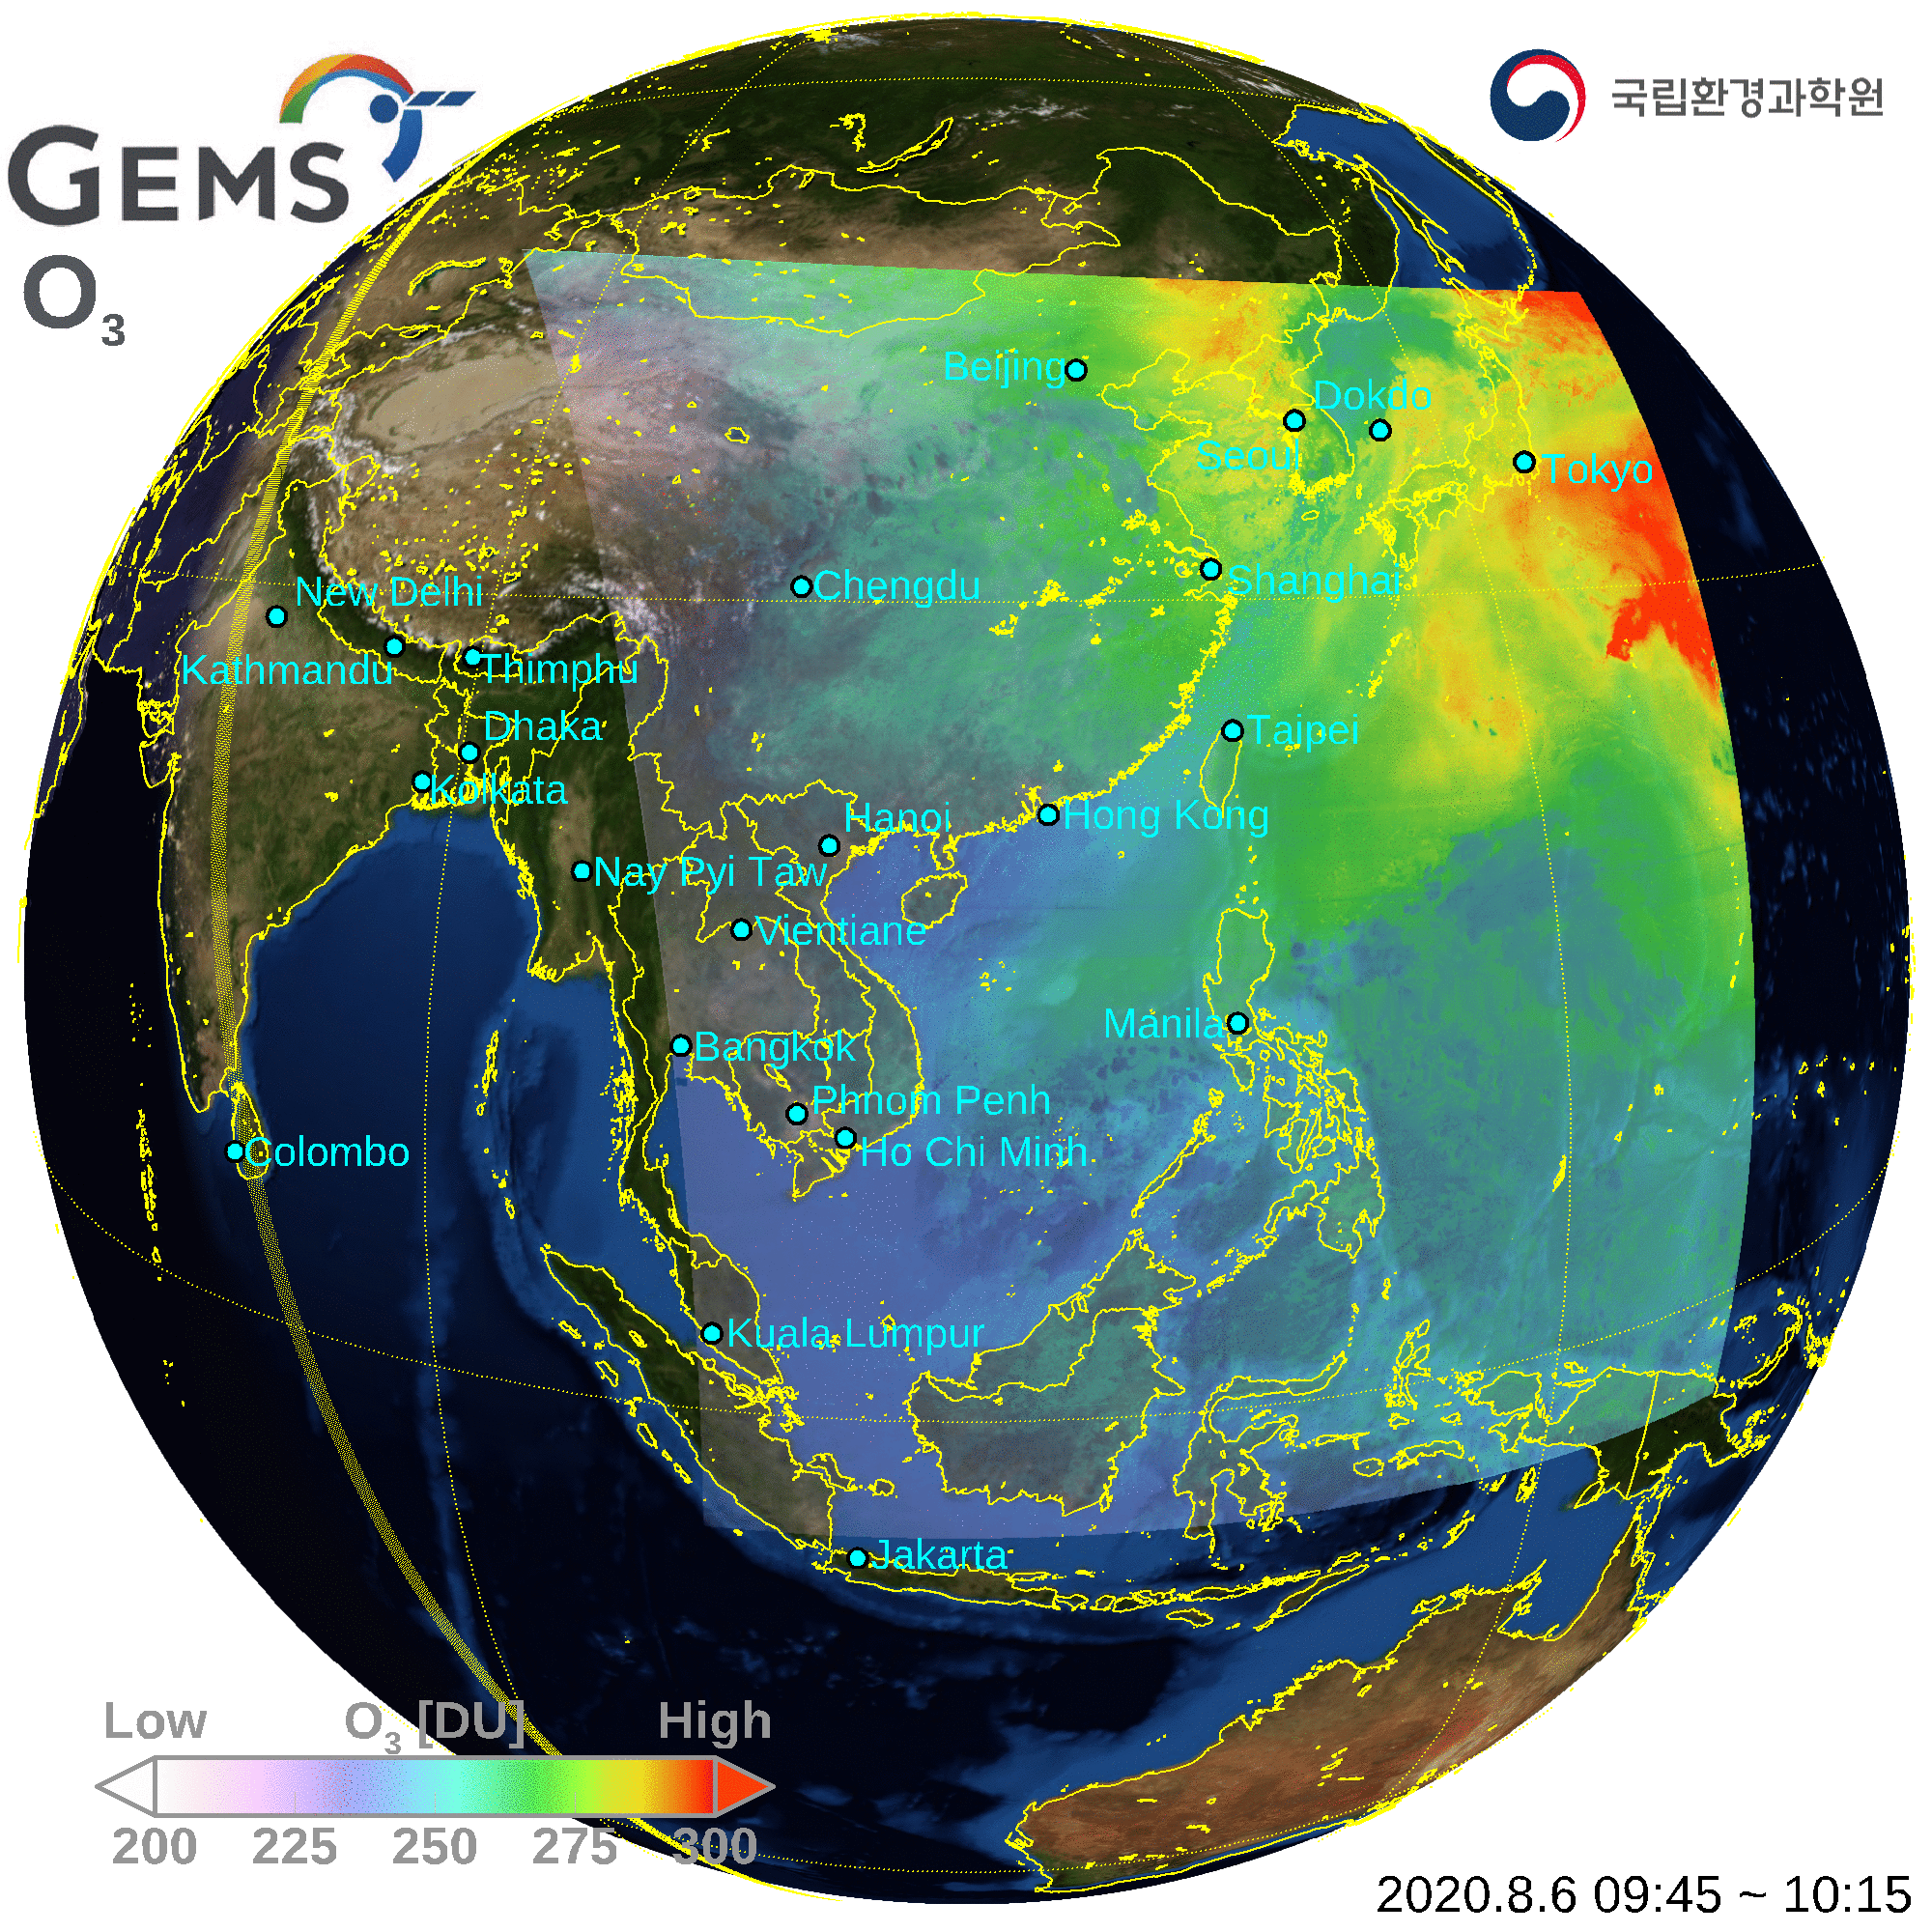 빨간색으로 나타나는 짙은 오존층이 중국 만주지방과 일본 동쪽에서 관측됐다. (제공 : 과학기술정보통신부)